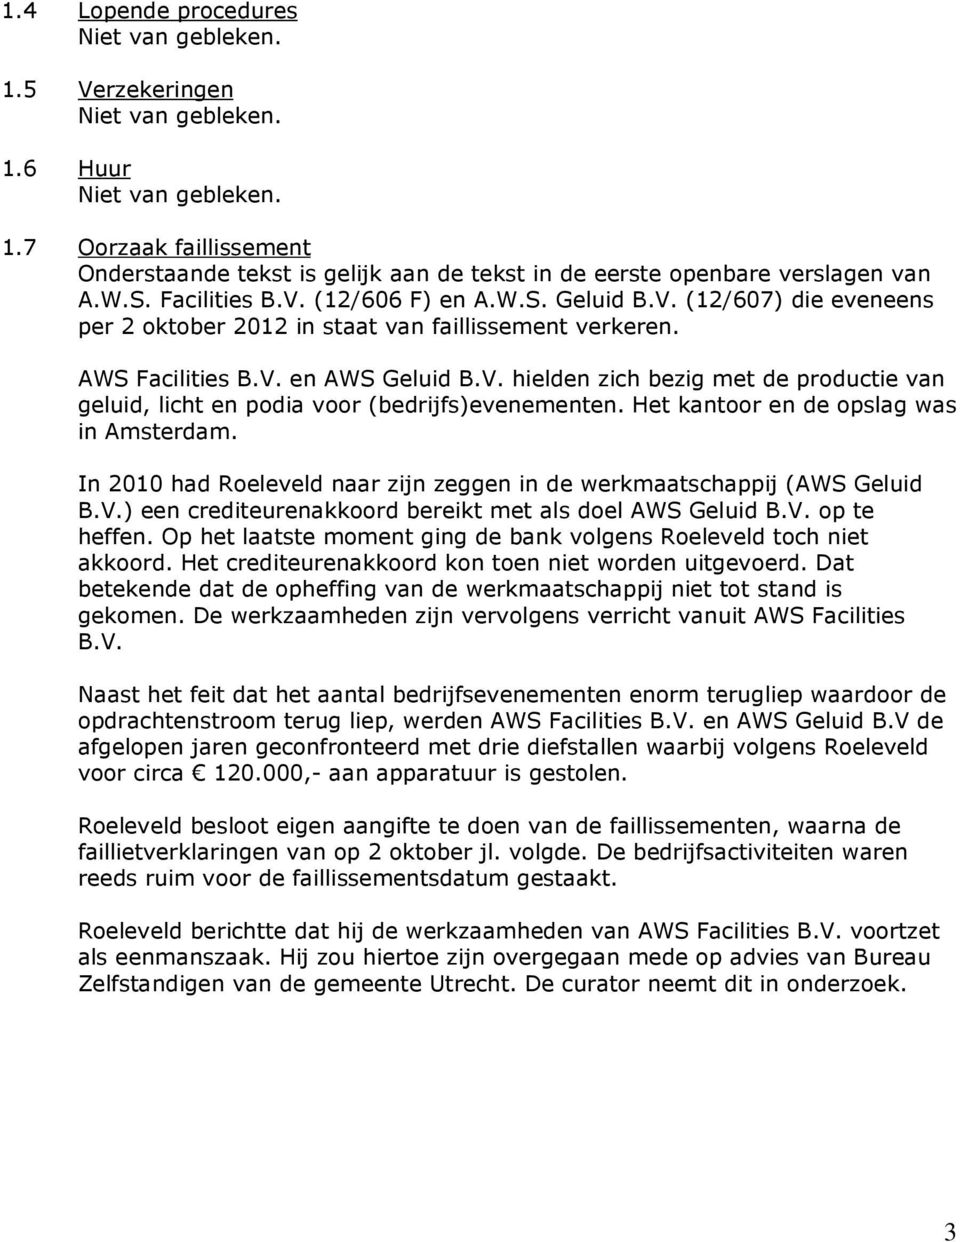 Het kantoor en de opslag was in Amsterdam. In 2010 had Roeleveld naar zijn zeggen in de werkmaatschappij (AWS Geluid B.V.) een crediteurenakkoord bereikt met als doel AWS Geluid B.V. op te heffen.